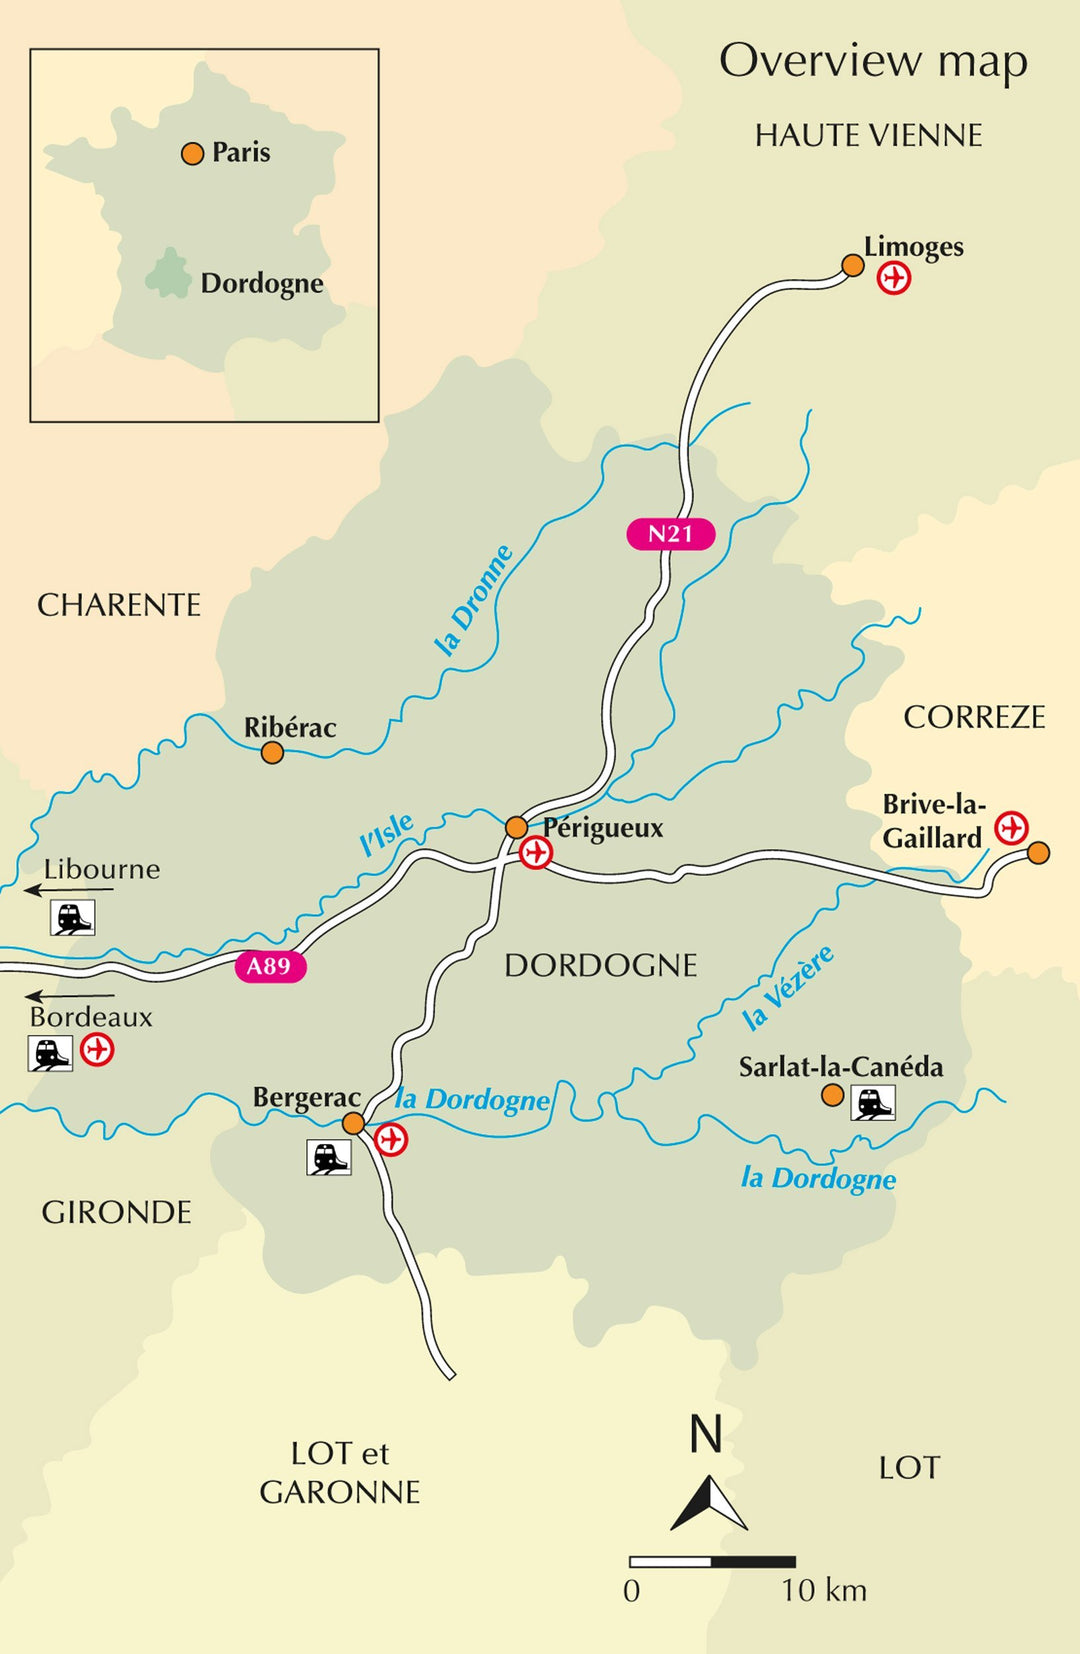 Guide de randonnées (en anglais) - Dordogne : 35 walking routes - Bergerac/Lalinde/Sarlat/Souillac | Cicerone guide de randonnée Cicerone 